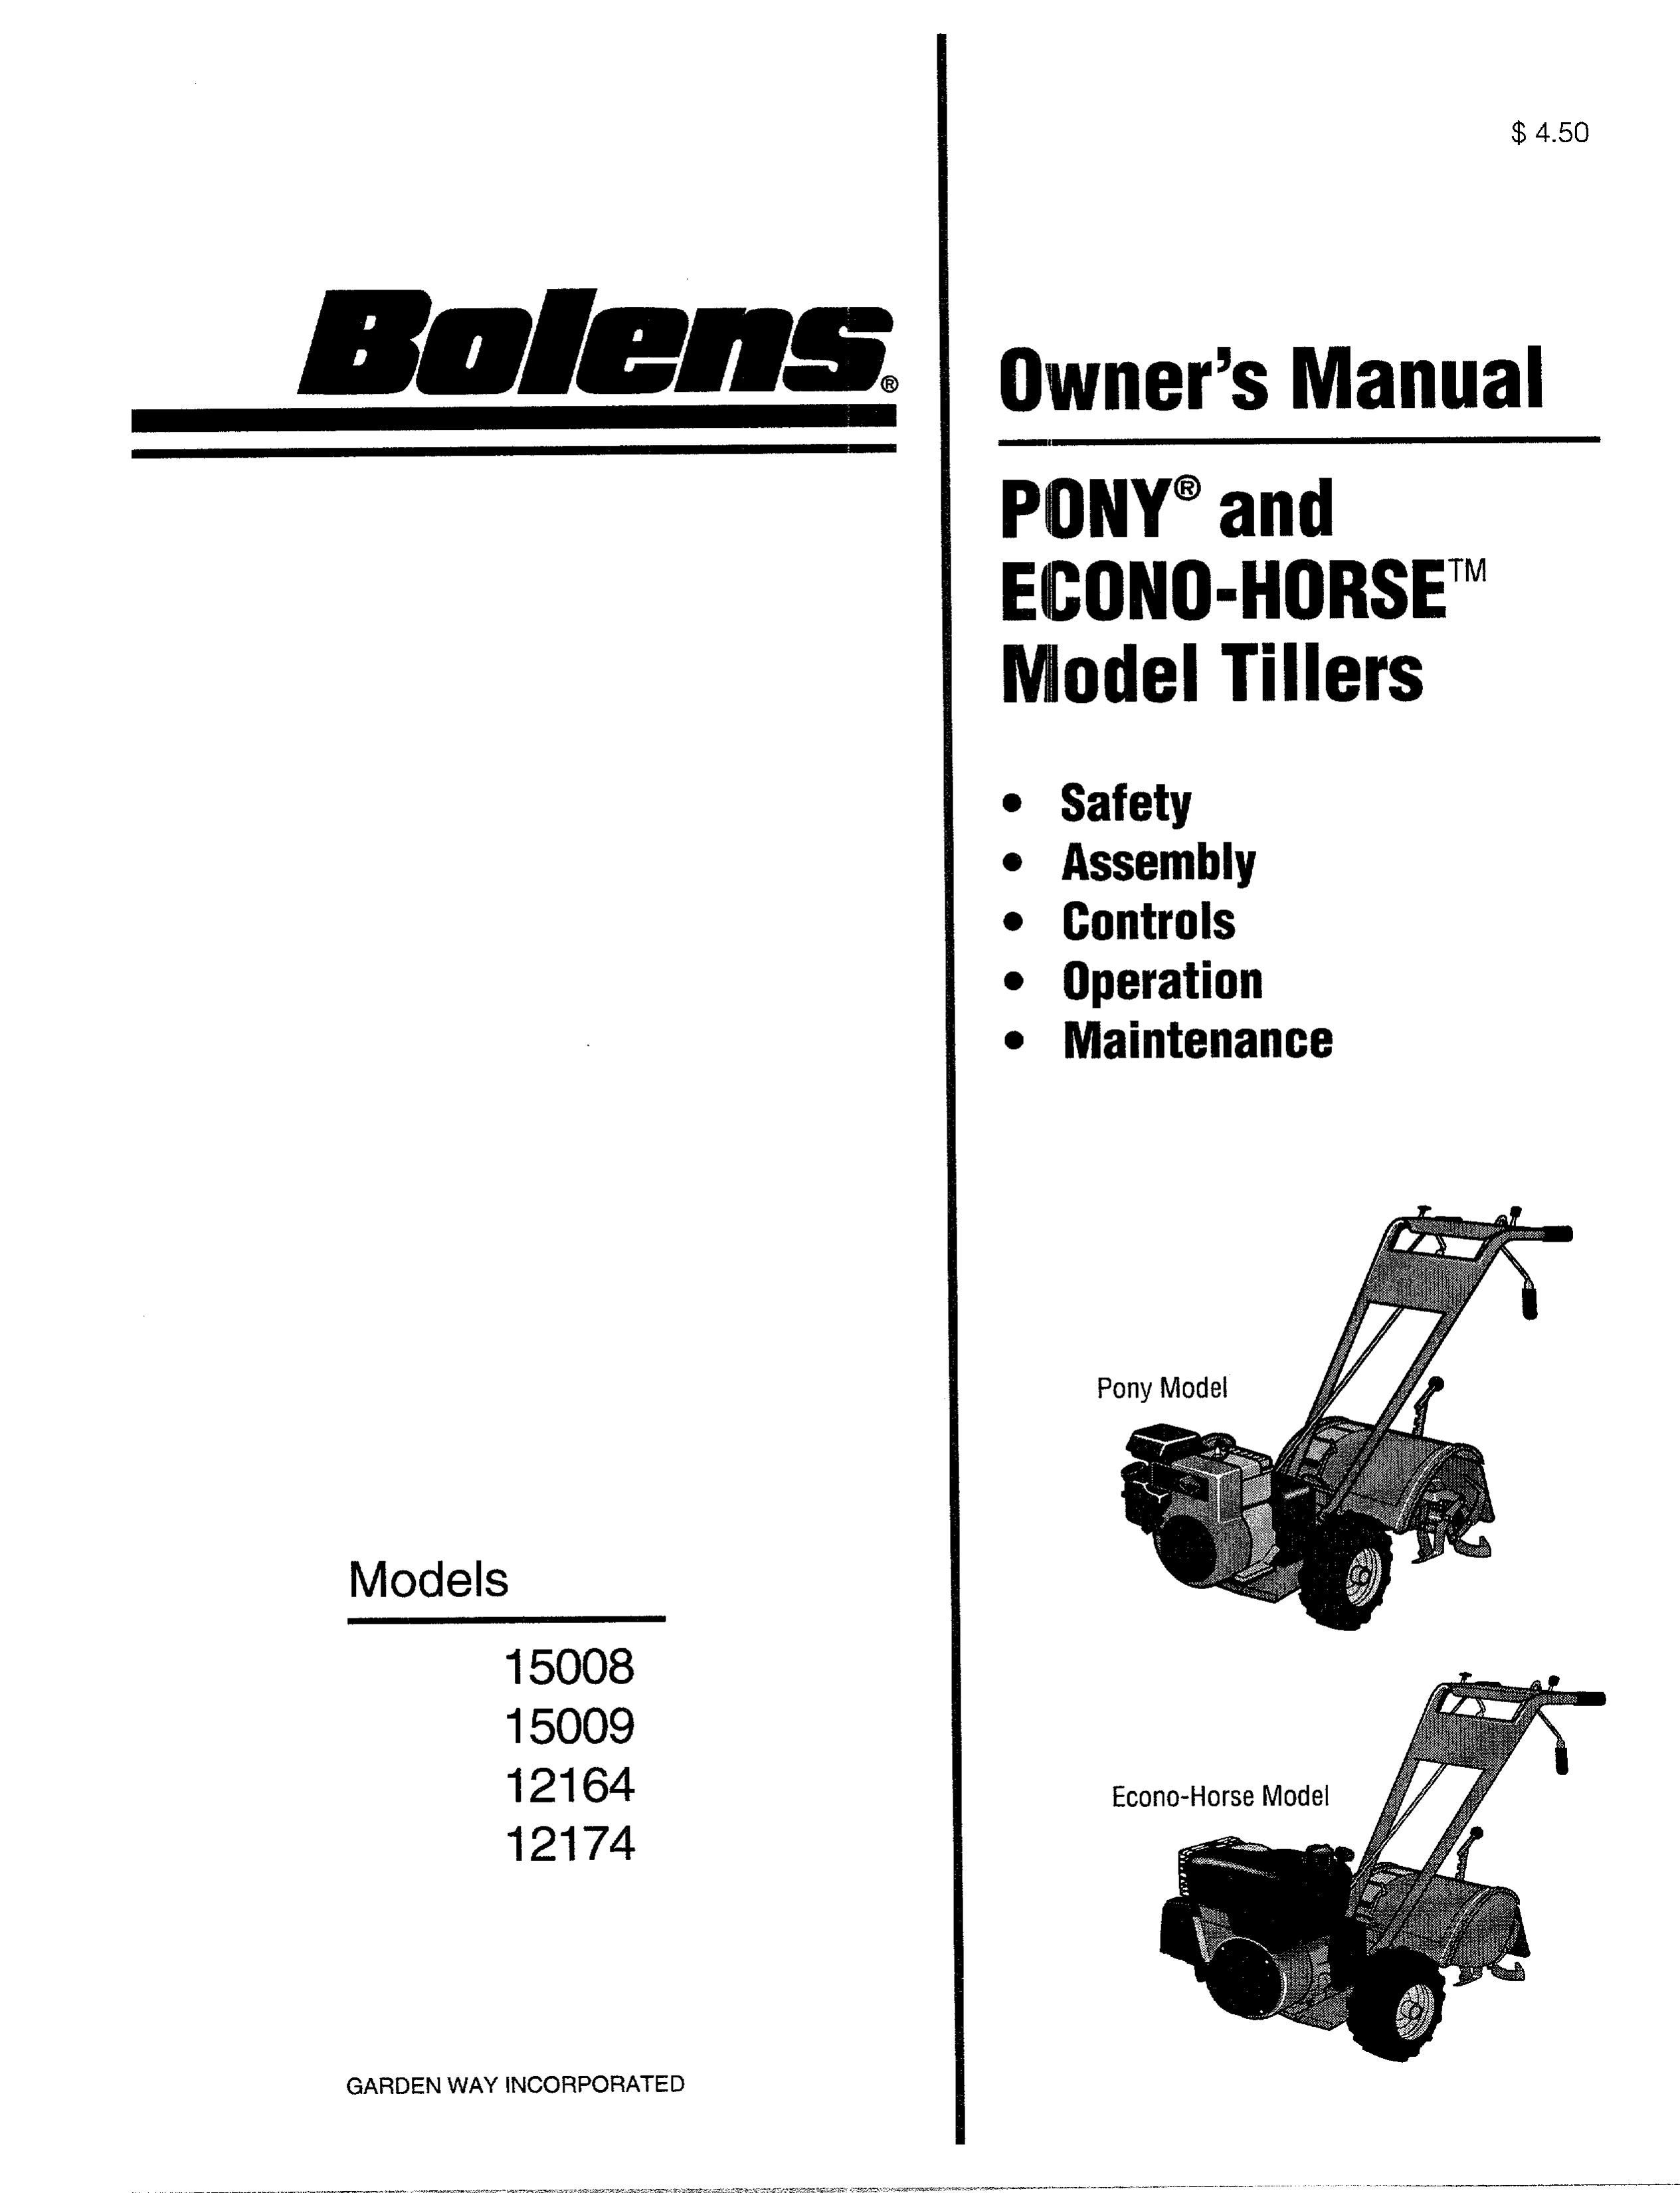 Bolens 12174 Tiller User Manual